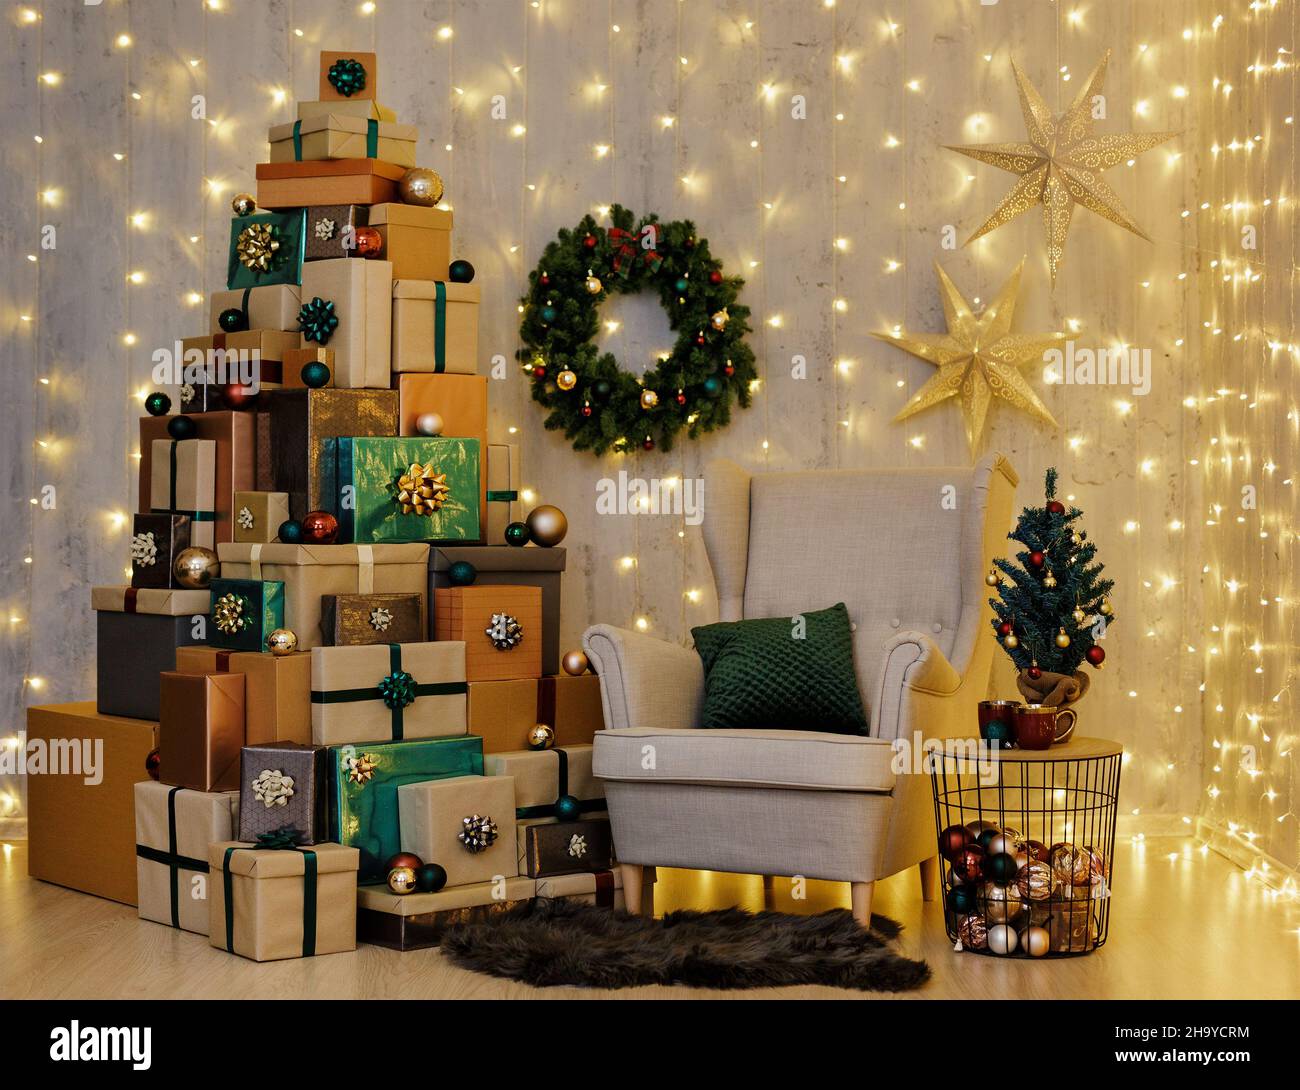 Không gian phòng khách trang trí đón Giáng sinh và năm mới: Với không gian phòng khách trang trí đón Giáng sinh và năm mới này, bạn sẽ có những giây phút thư giãn và ngắm nhìn những vật dụng trang trí xinh đẹp, rực rỡ màu sắc. Từ cây thông, cây đèn, ruy băng đến hộp quà, tất cả đều xuất hiện trong không gian sống của bạn và mang lại cảm giác ấm áp, đón nhận năm mới cùng gia đình.